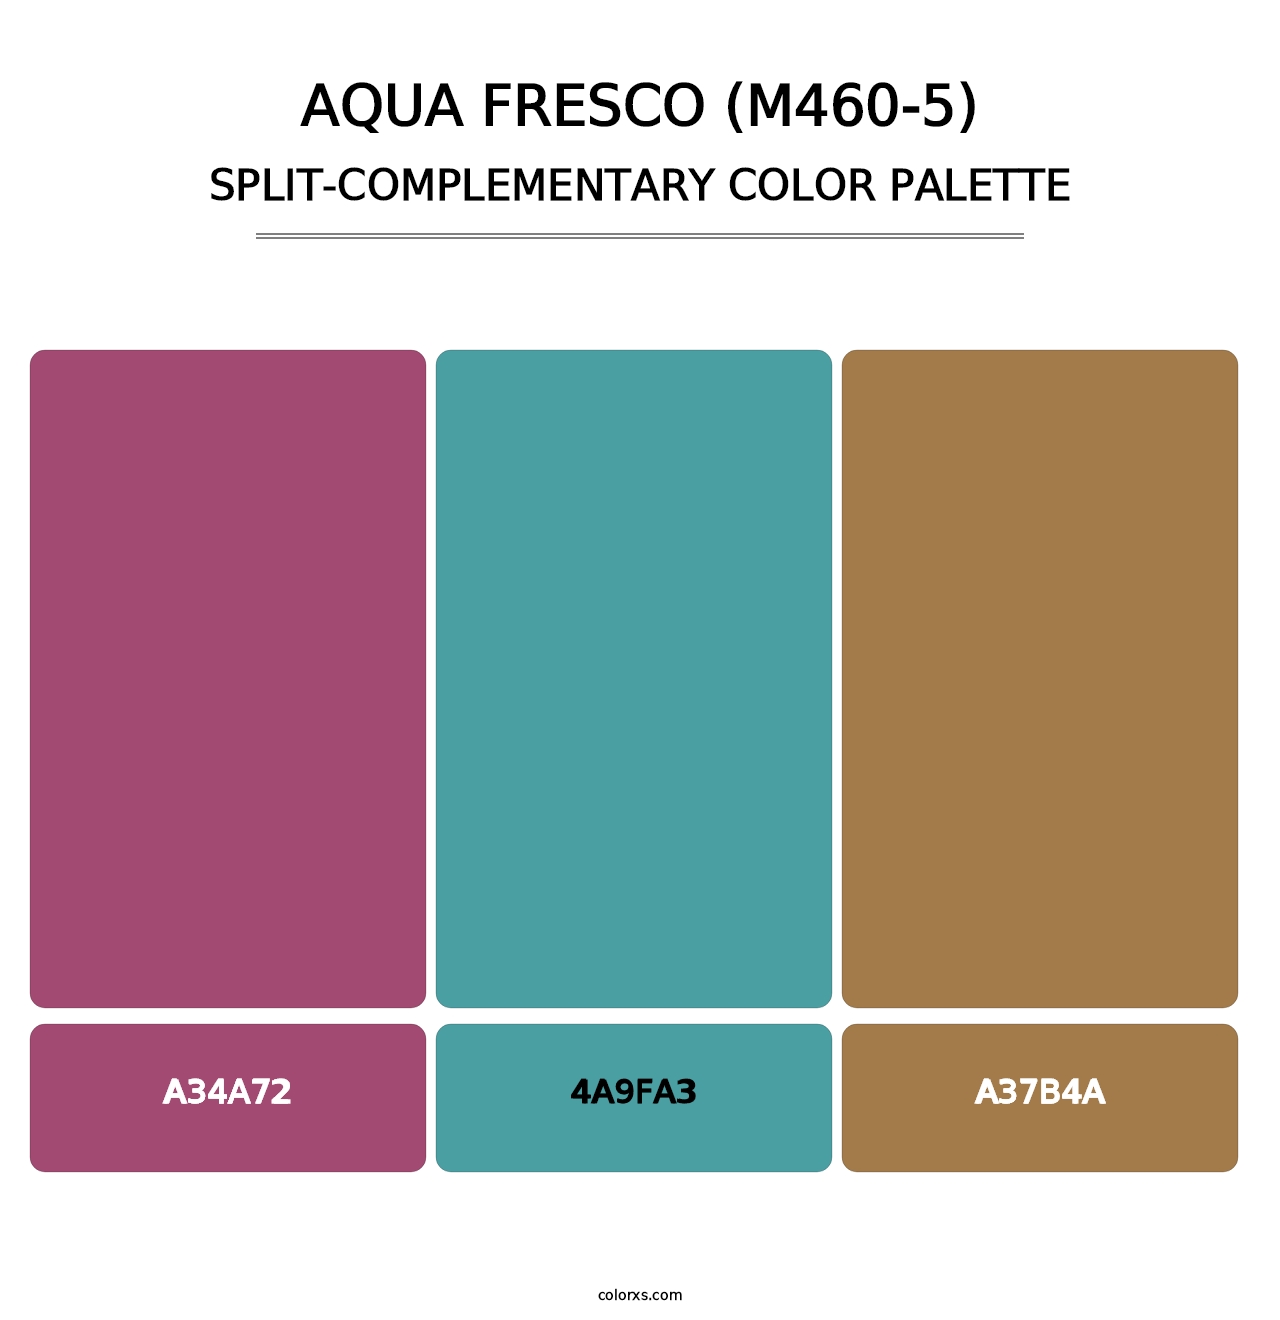 Aqua Fresco (M460-5) - Split-Complementary Color Palette